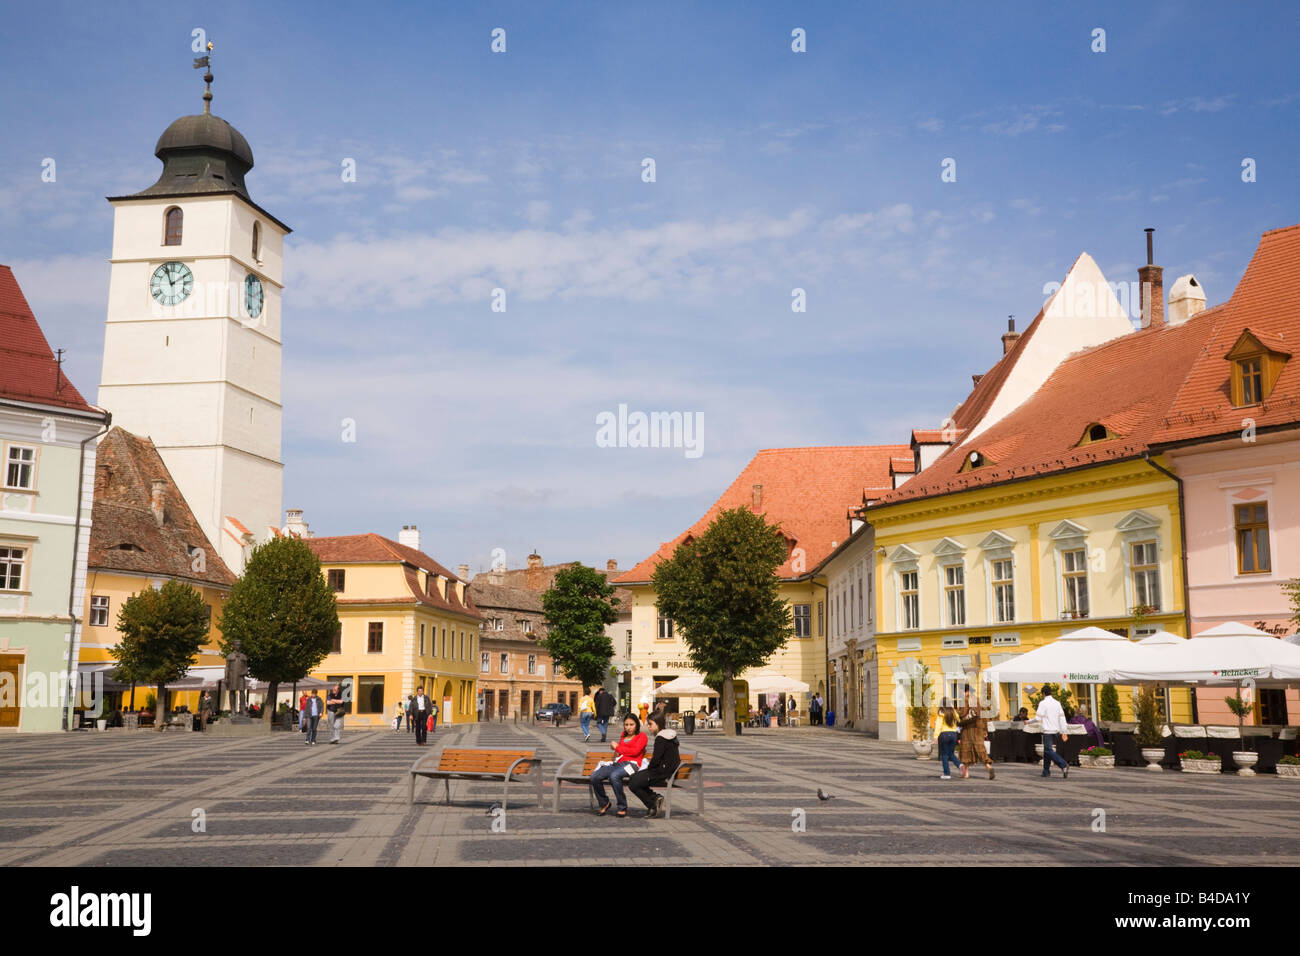 Gli edifici di vecchia costruzione in Piata Mare nel centro storico della città di Hermannstadt o Sibiu Transilvania Romania Europa Foto Stock